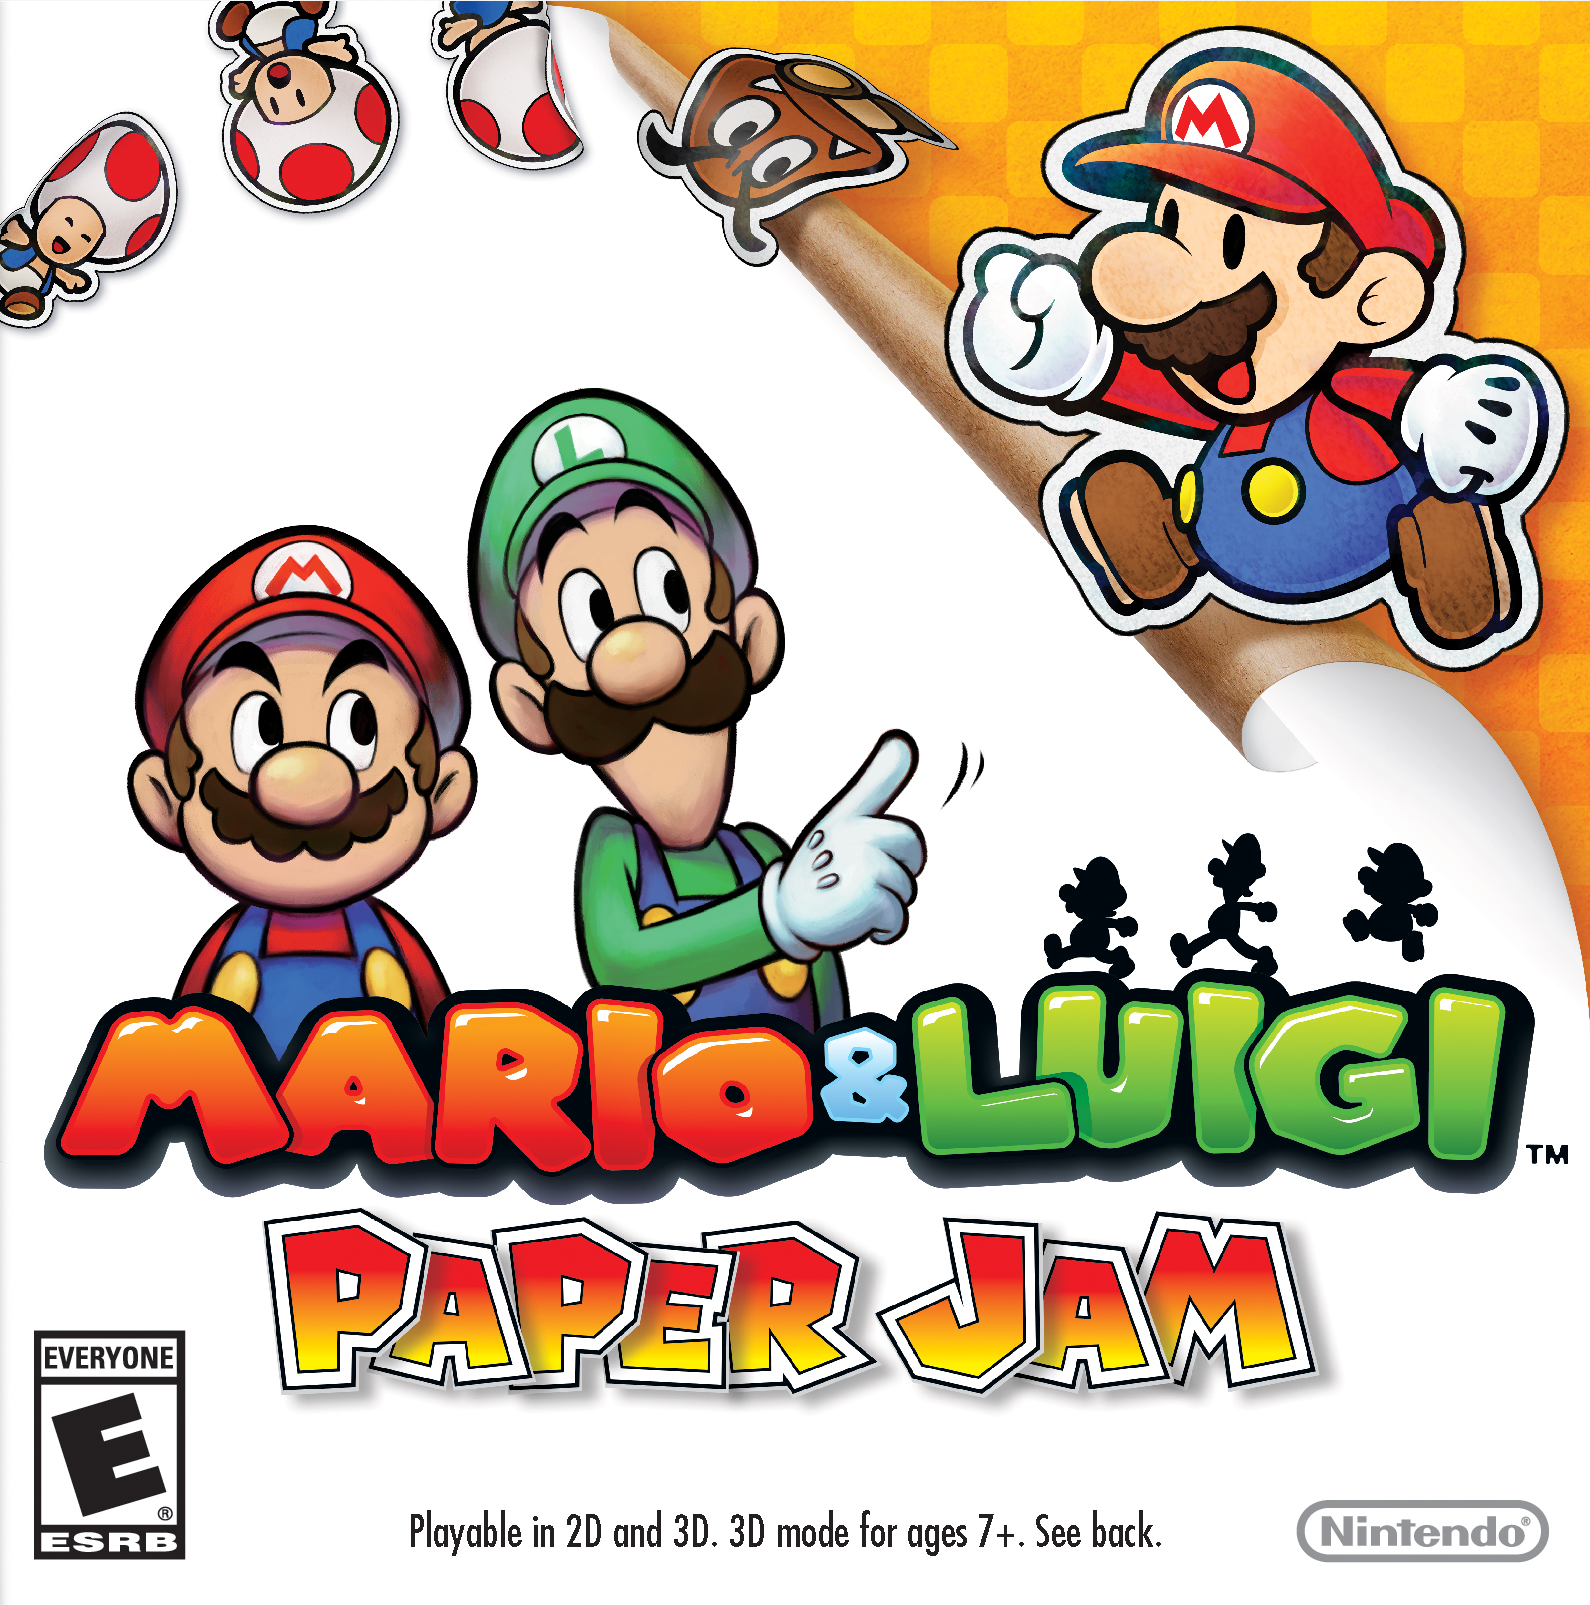 Image of Mario & Luigi: Paper Jam